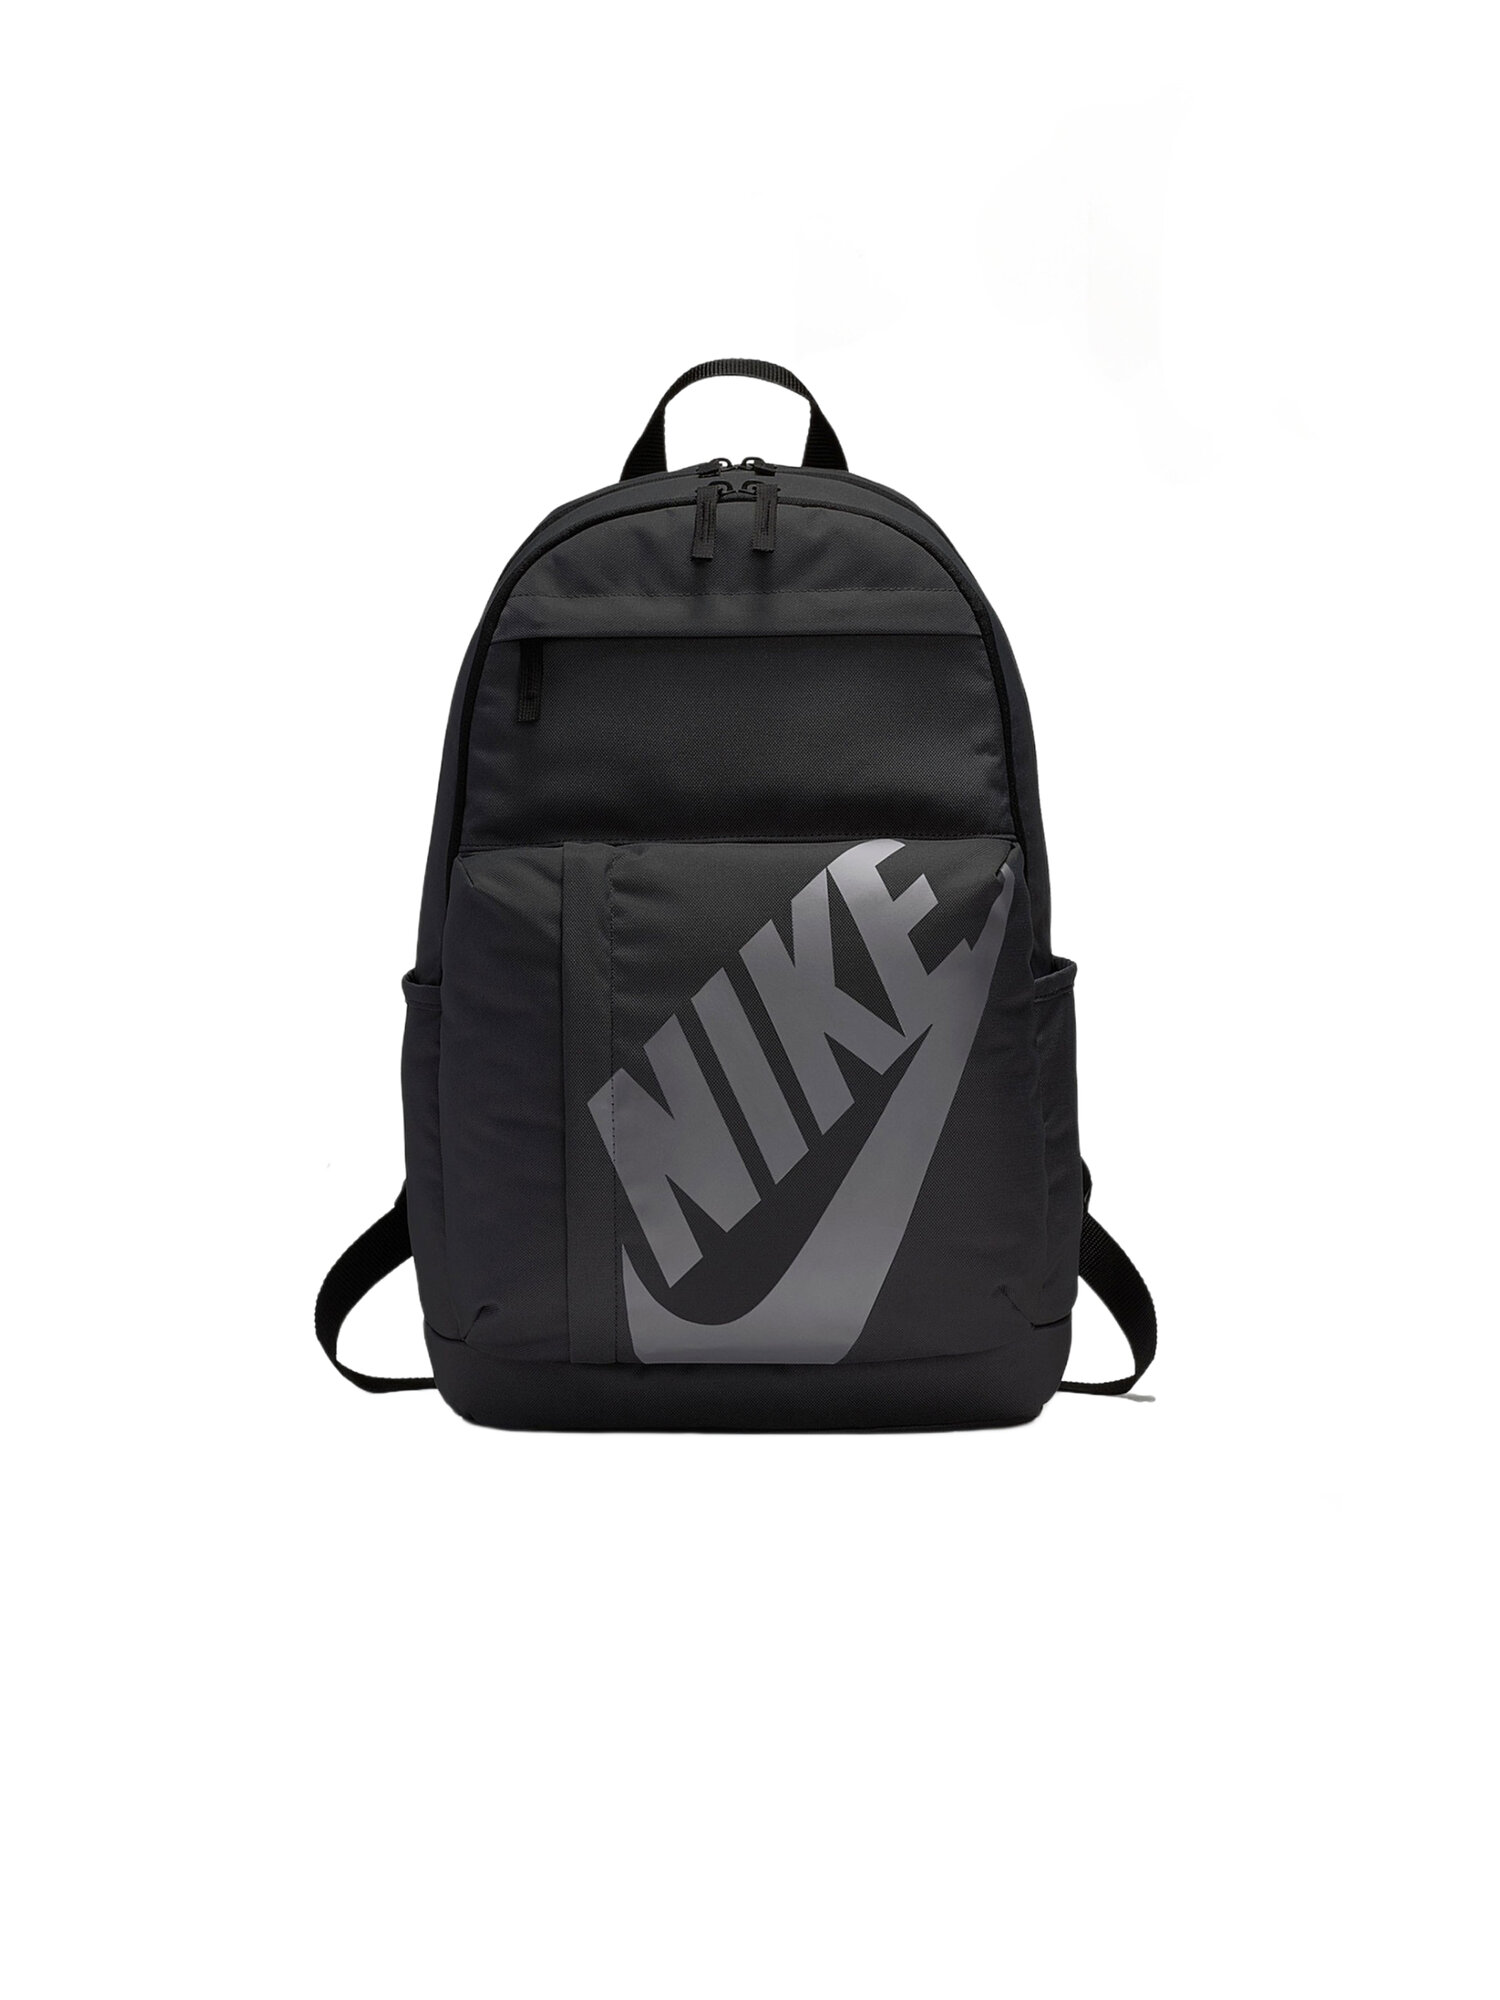 Городской рюкзак NIKE Sportswear Elemental, черный